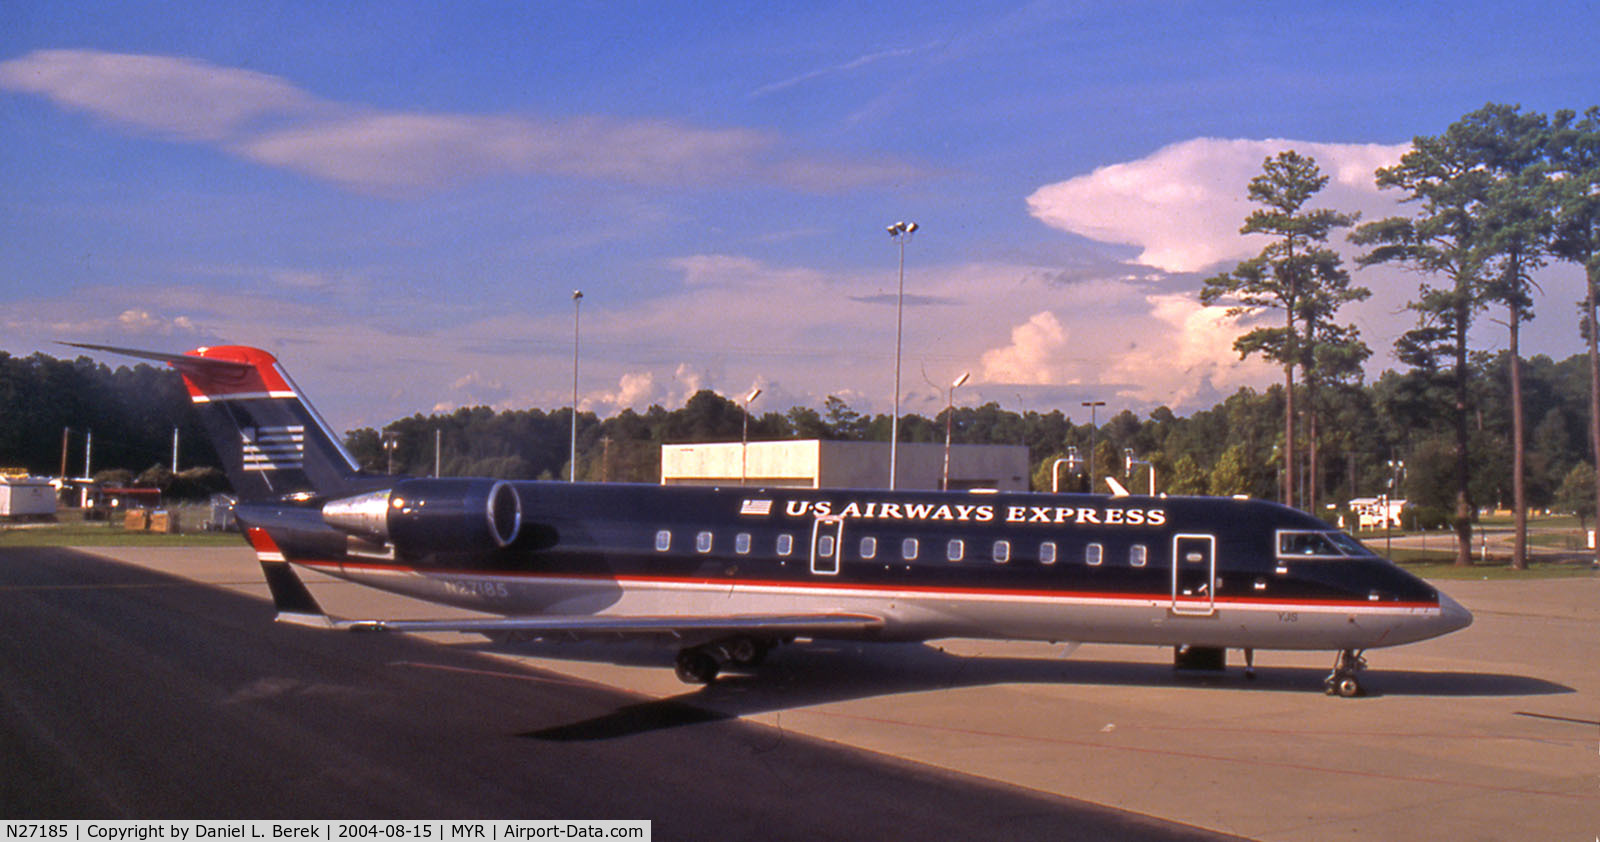 N27185, 1997 Canadair CRJ-200LR (CL-600-2B19) C/N 7185, Nice-looking plane at Myrtle Beach, SC